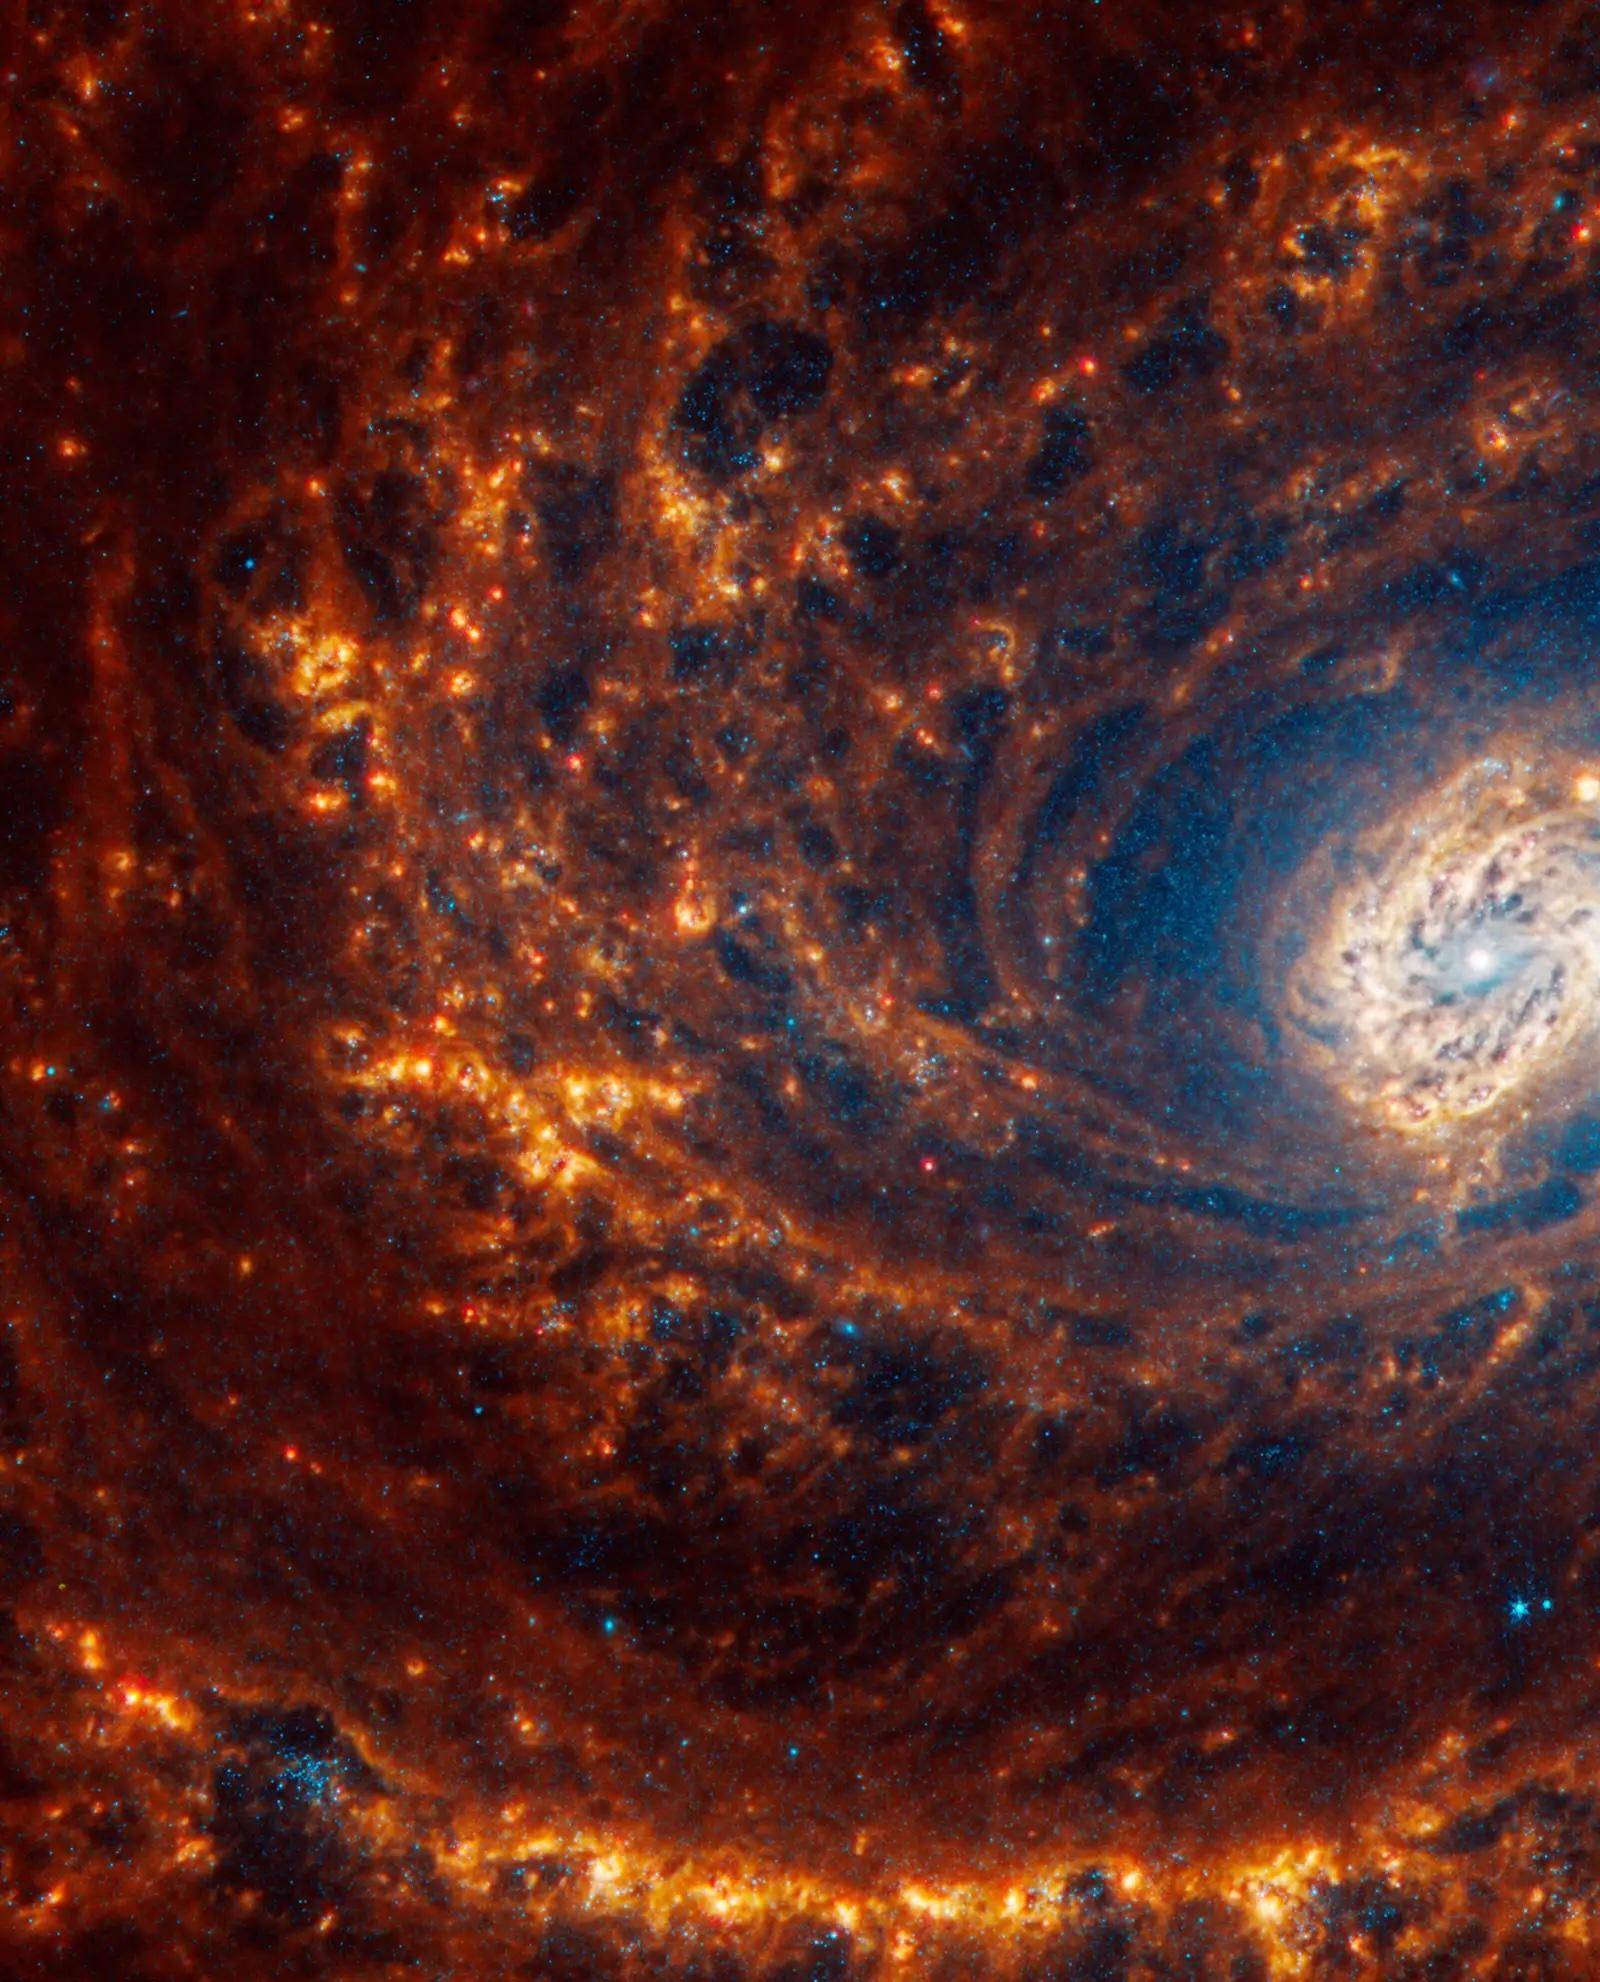 精彩纷呈的迷幻漩涡:韦伯望远镜拍摄的螺旋星系图像集